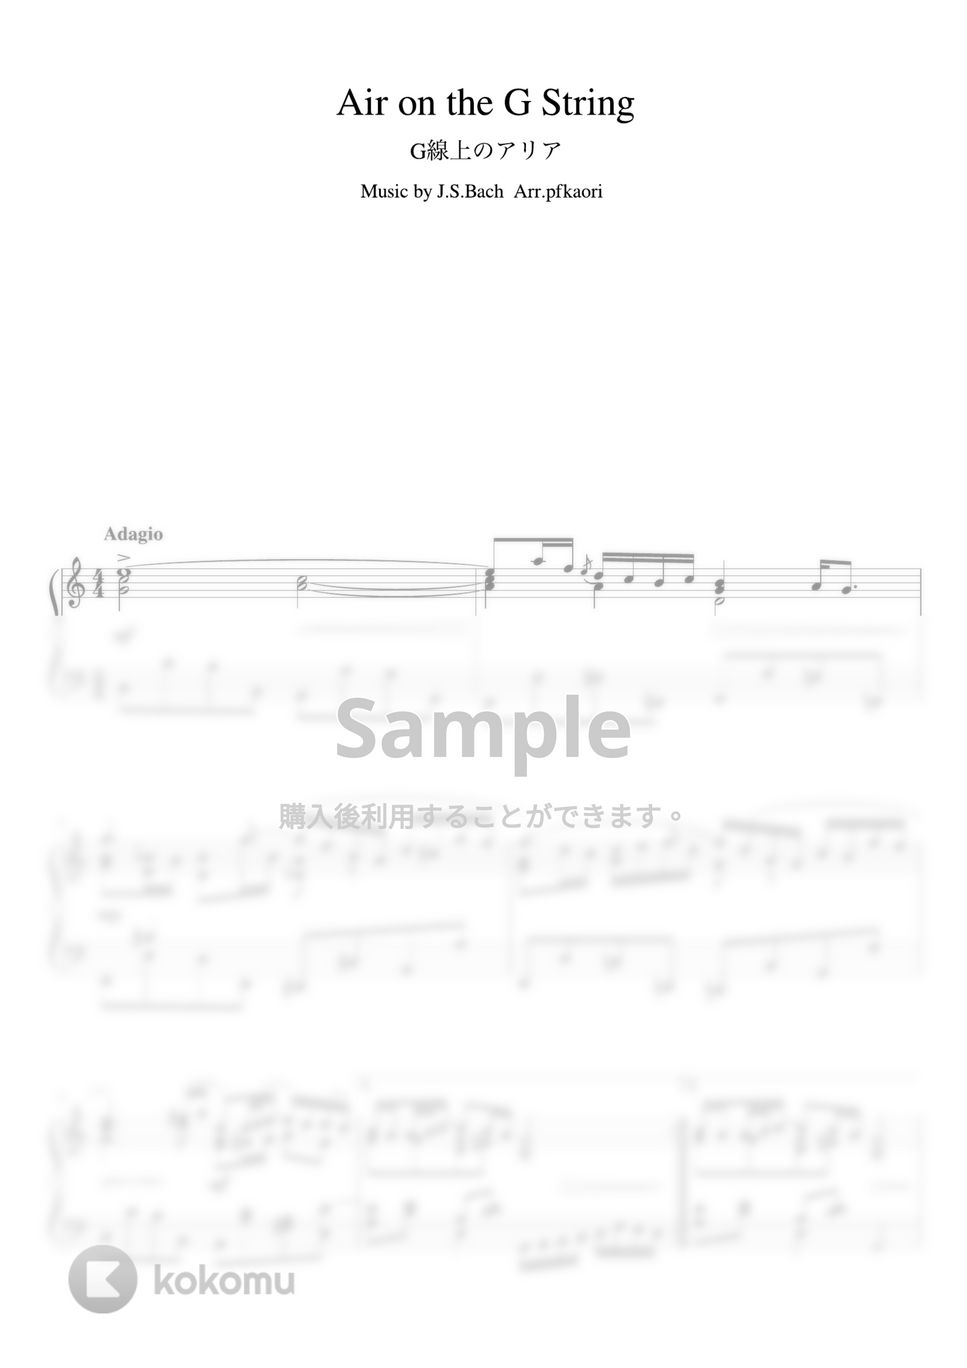 バッハ - G線上のアリア (Cdur・ピアノソロ中級) by pfkaori